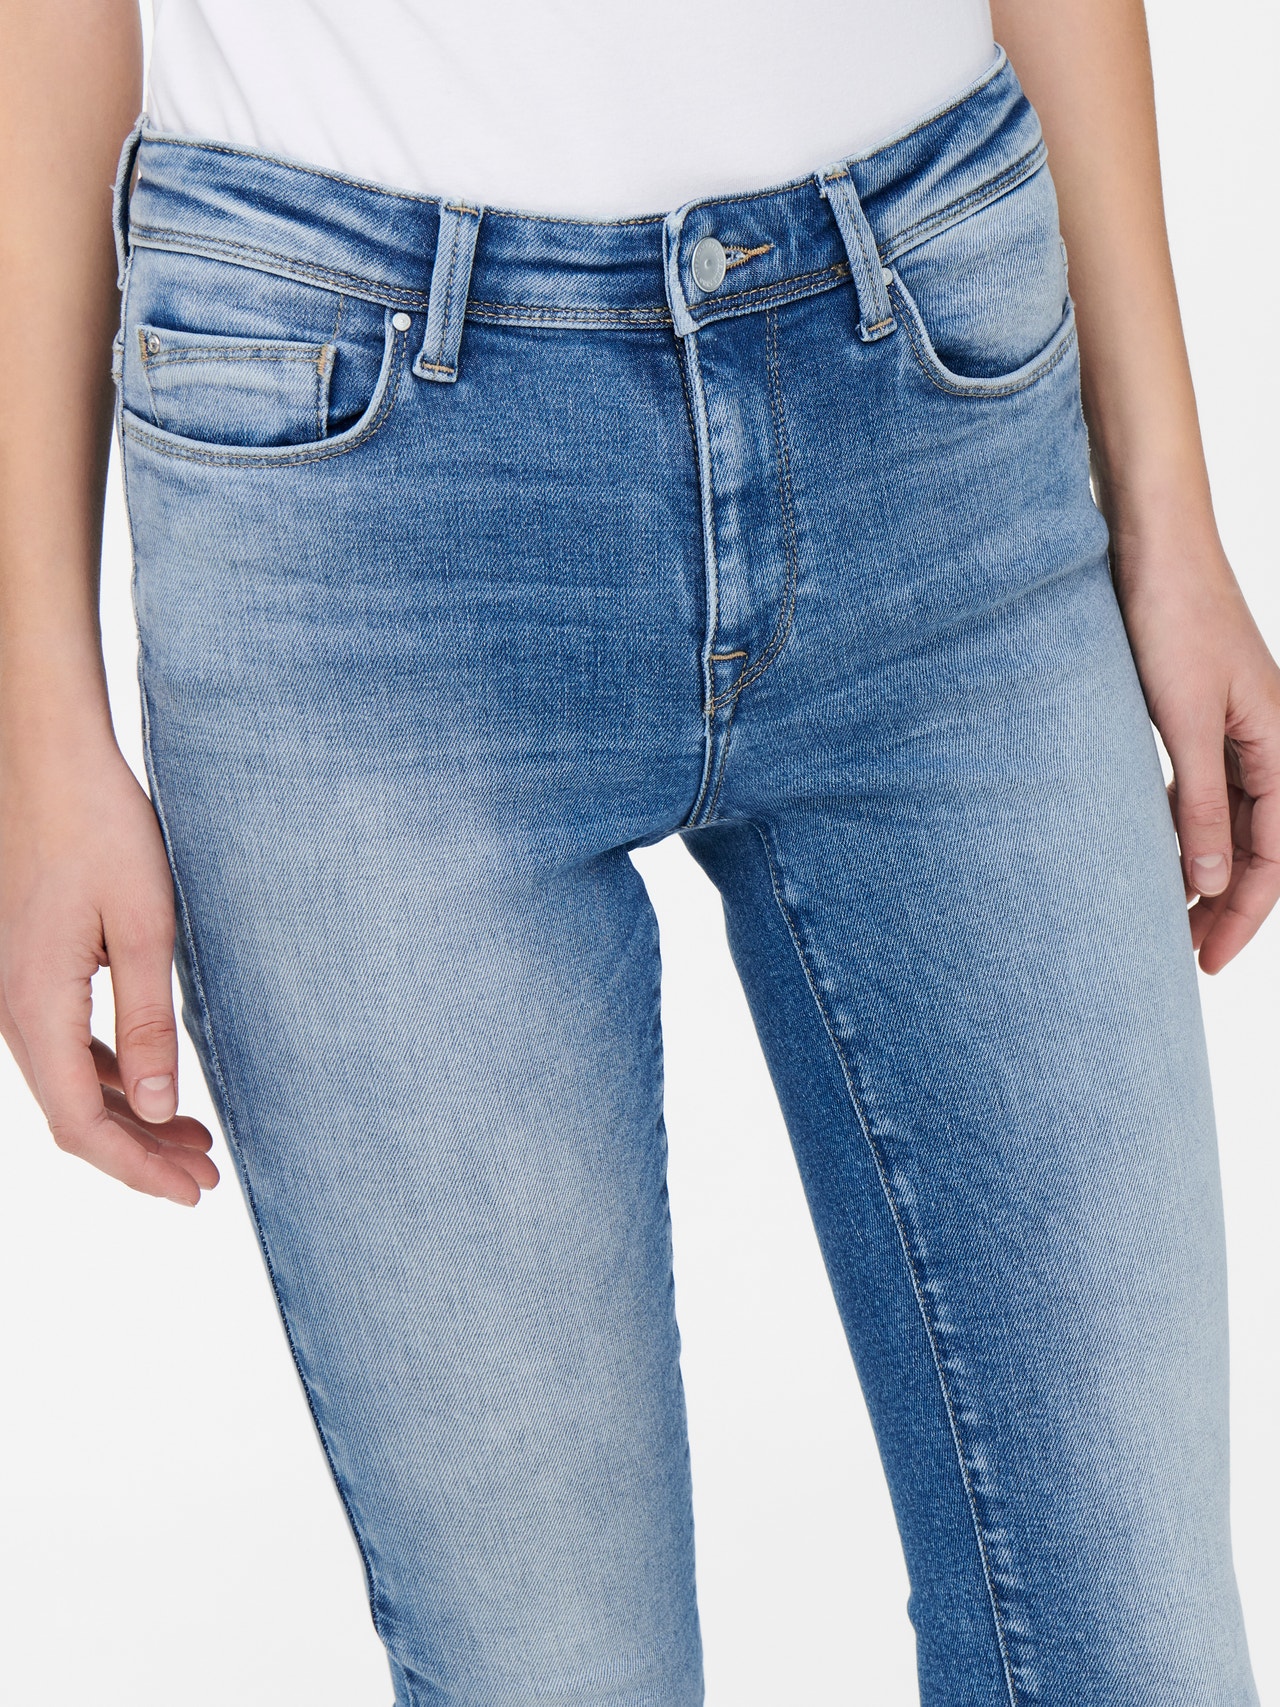 ONLY ONLShape reg Skinny fit jeans -Light Medium Blue Denim - 15250160